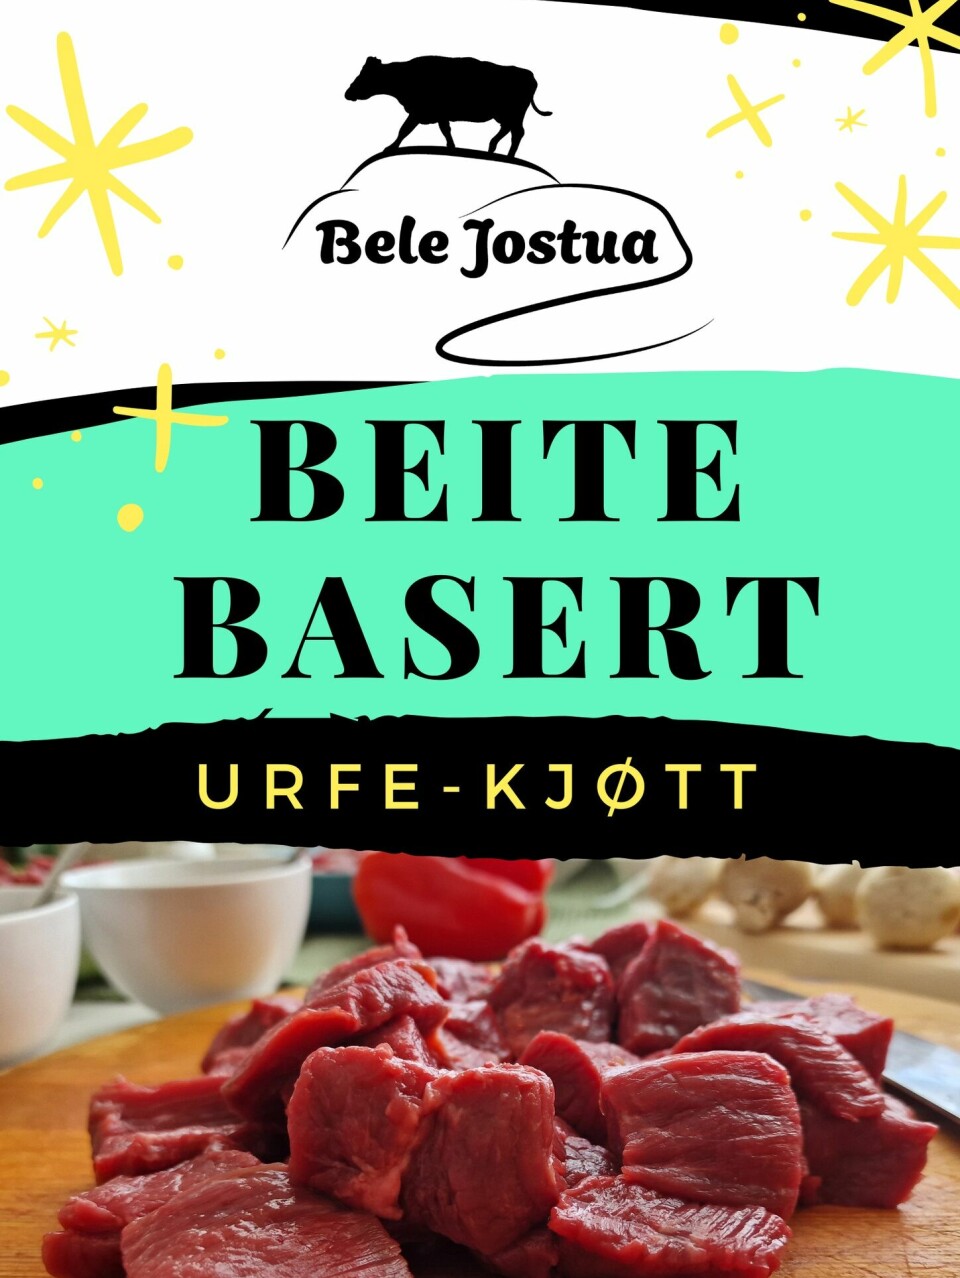 Plakat med reklame for urfe-kjøtt fra Bele Jostua, Surnadal